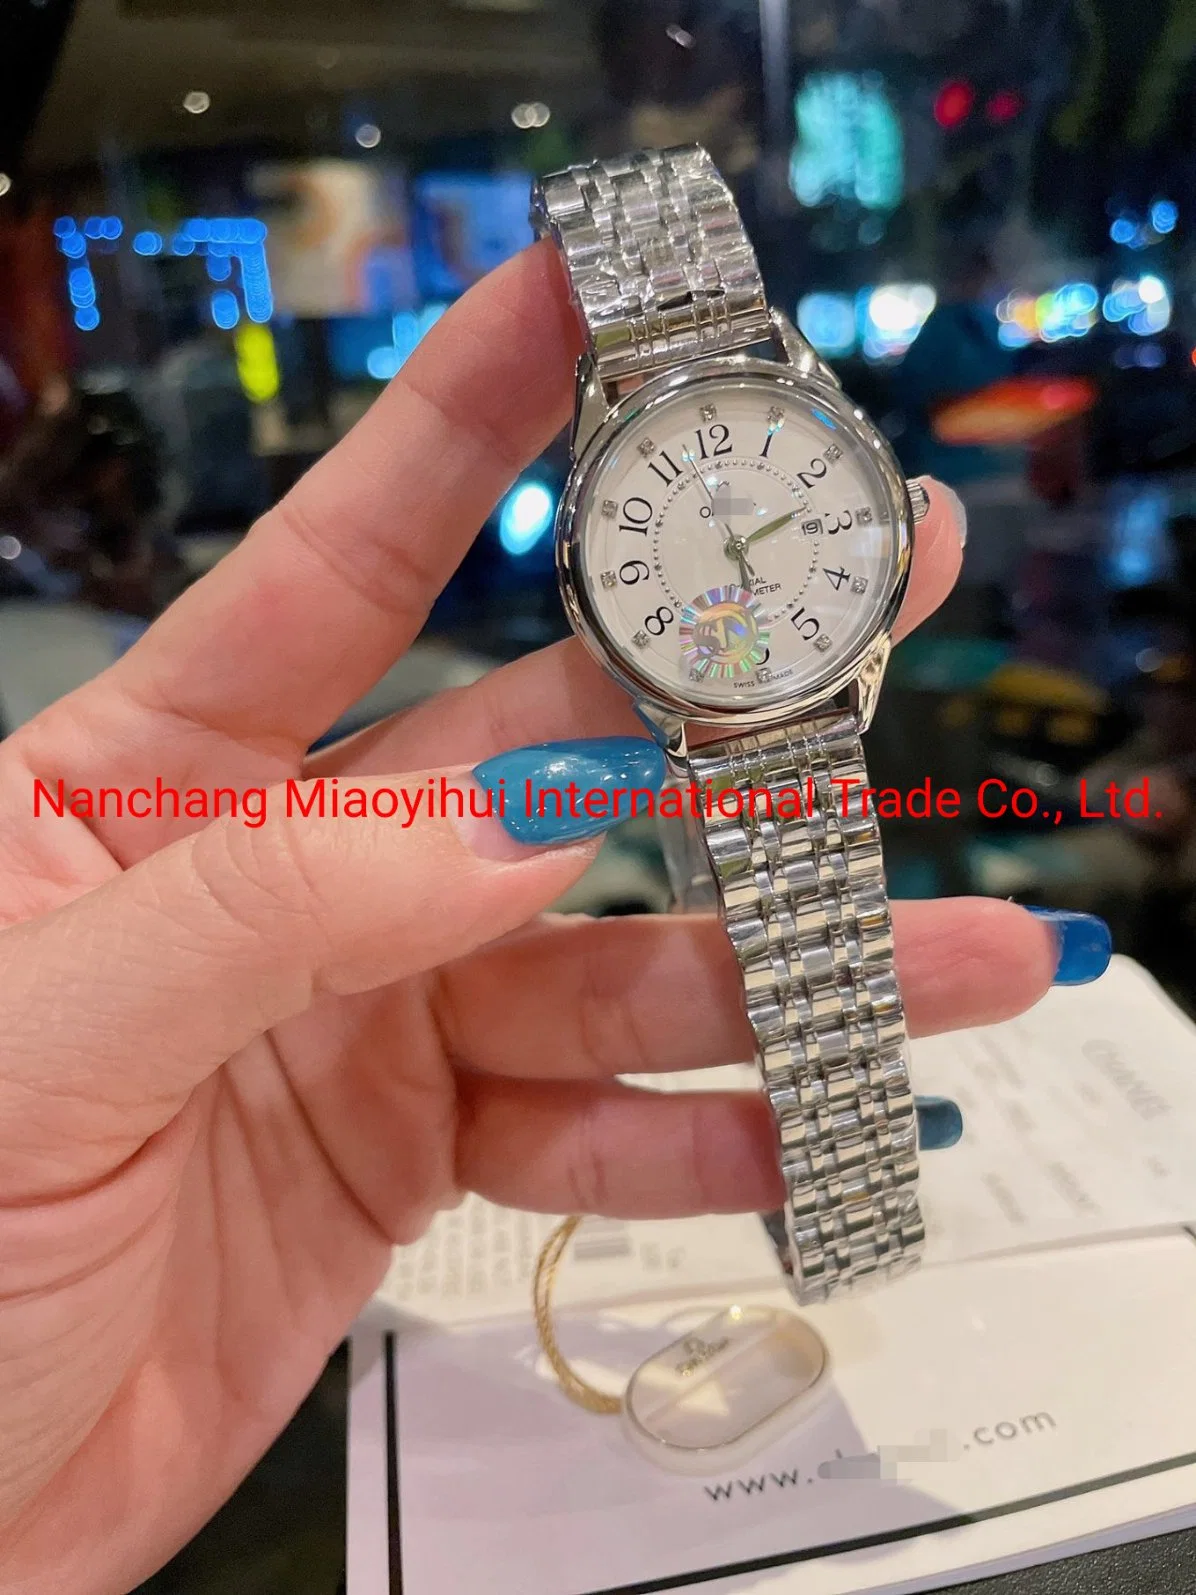 Wholeslae Quartz Wrist Watch Lady Watch Woman Watch Automatic Watch Gift Watch Man Watch Fashion Watch Replica Luxury Brand Wrist Watch Designer Electric Watch